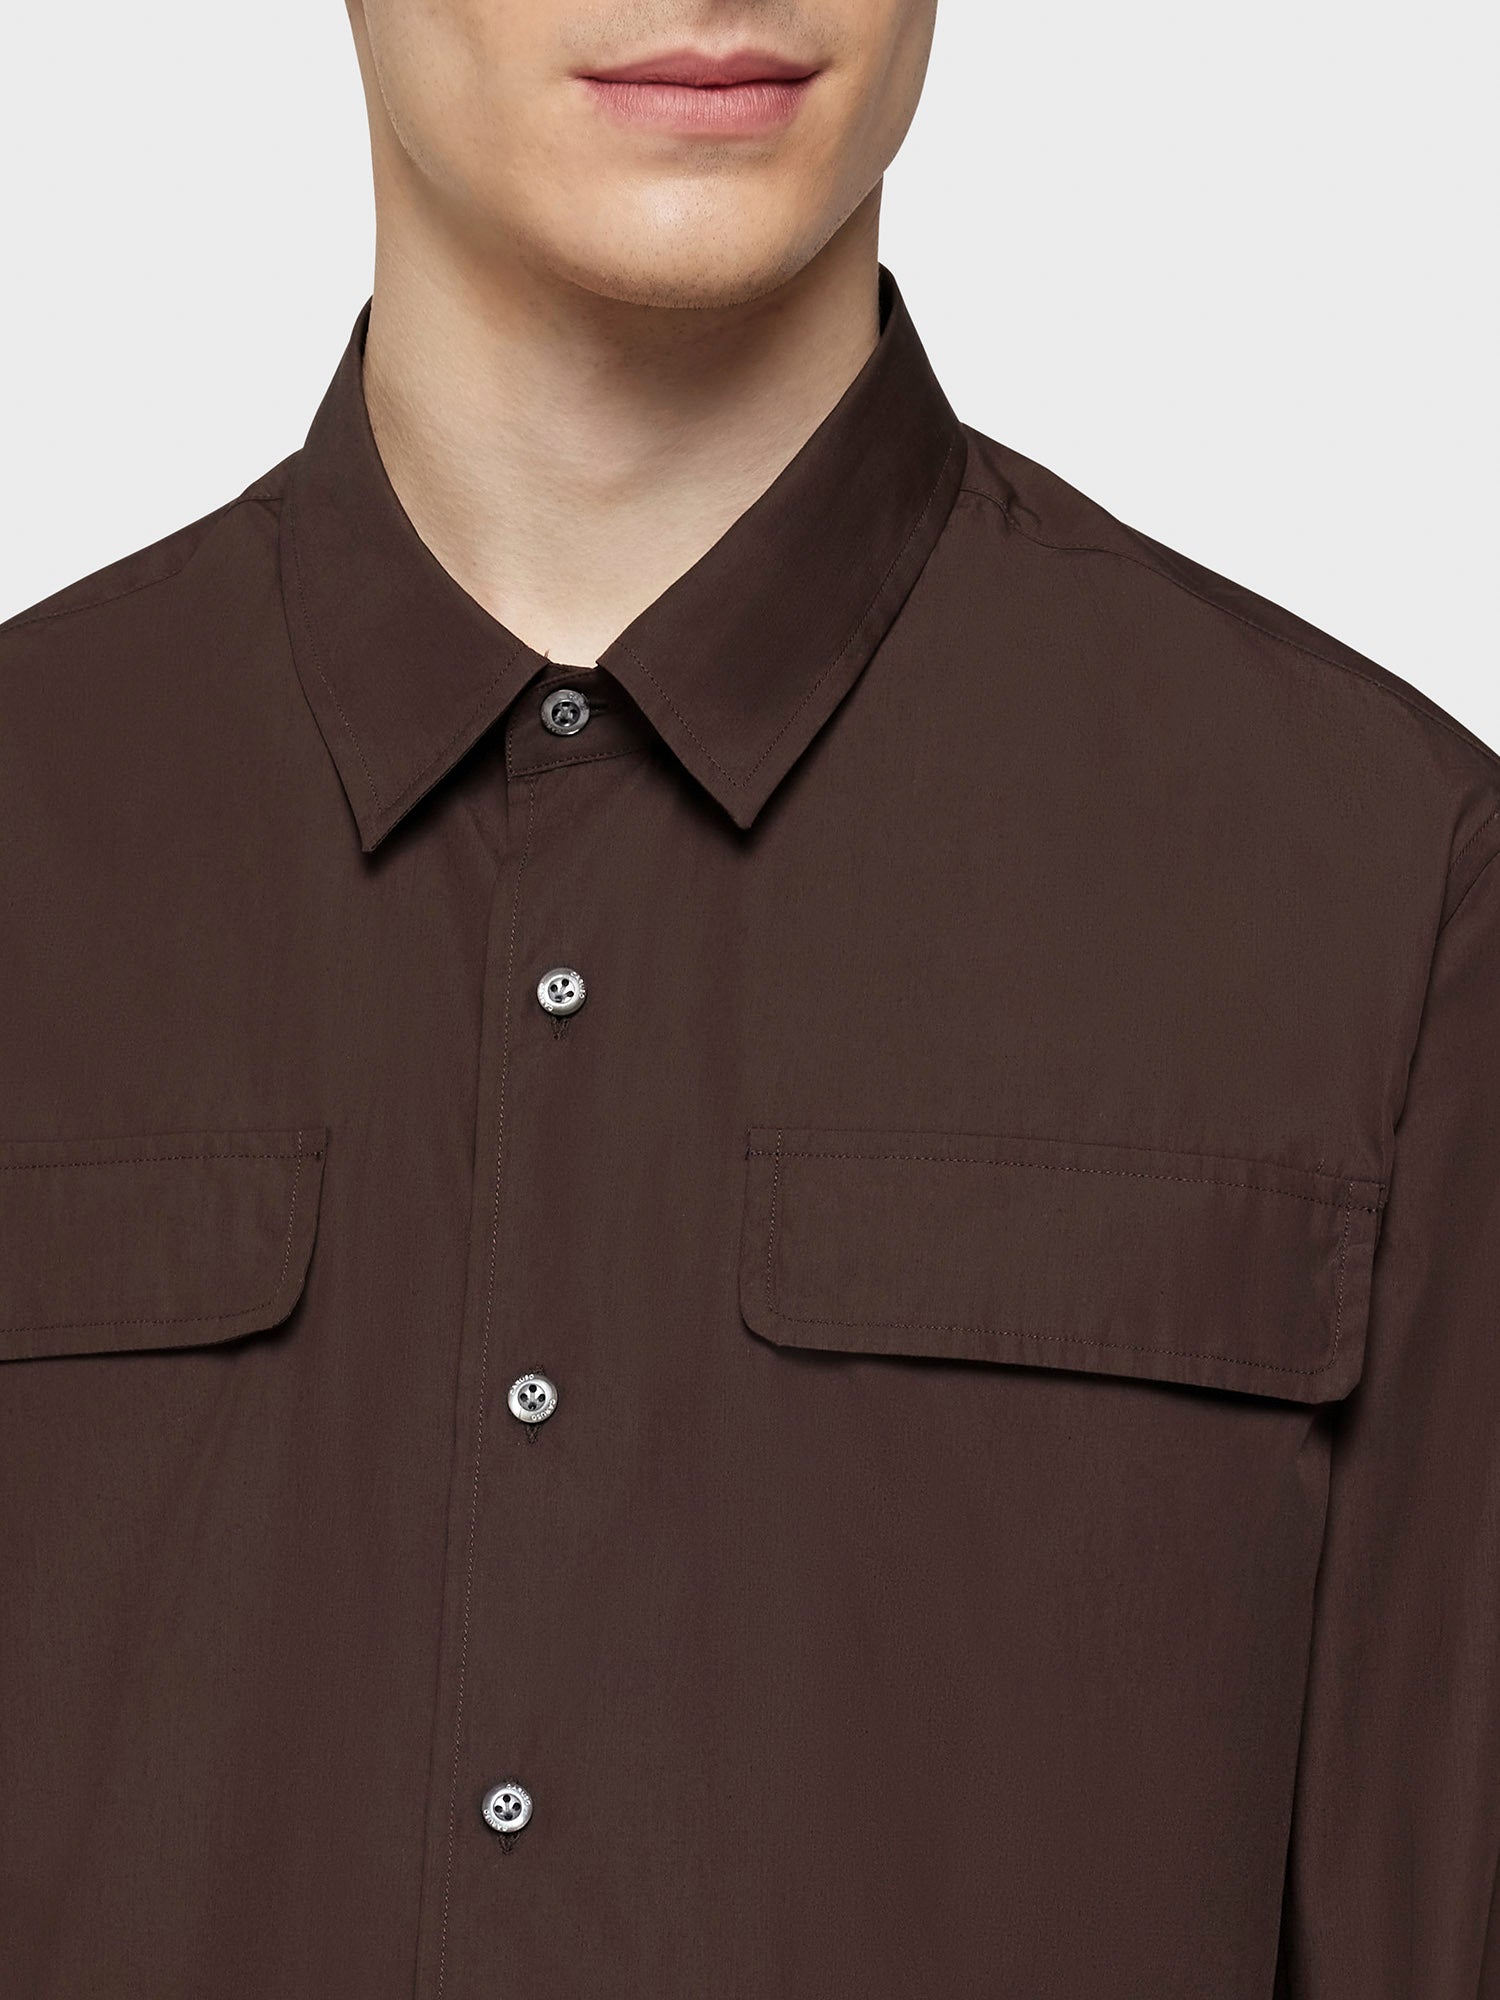 Caruso Menswear Abbigliamento Uomo Camicia in cotone marrone dettaglio camicia